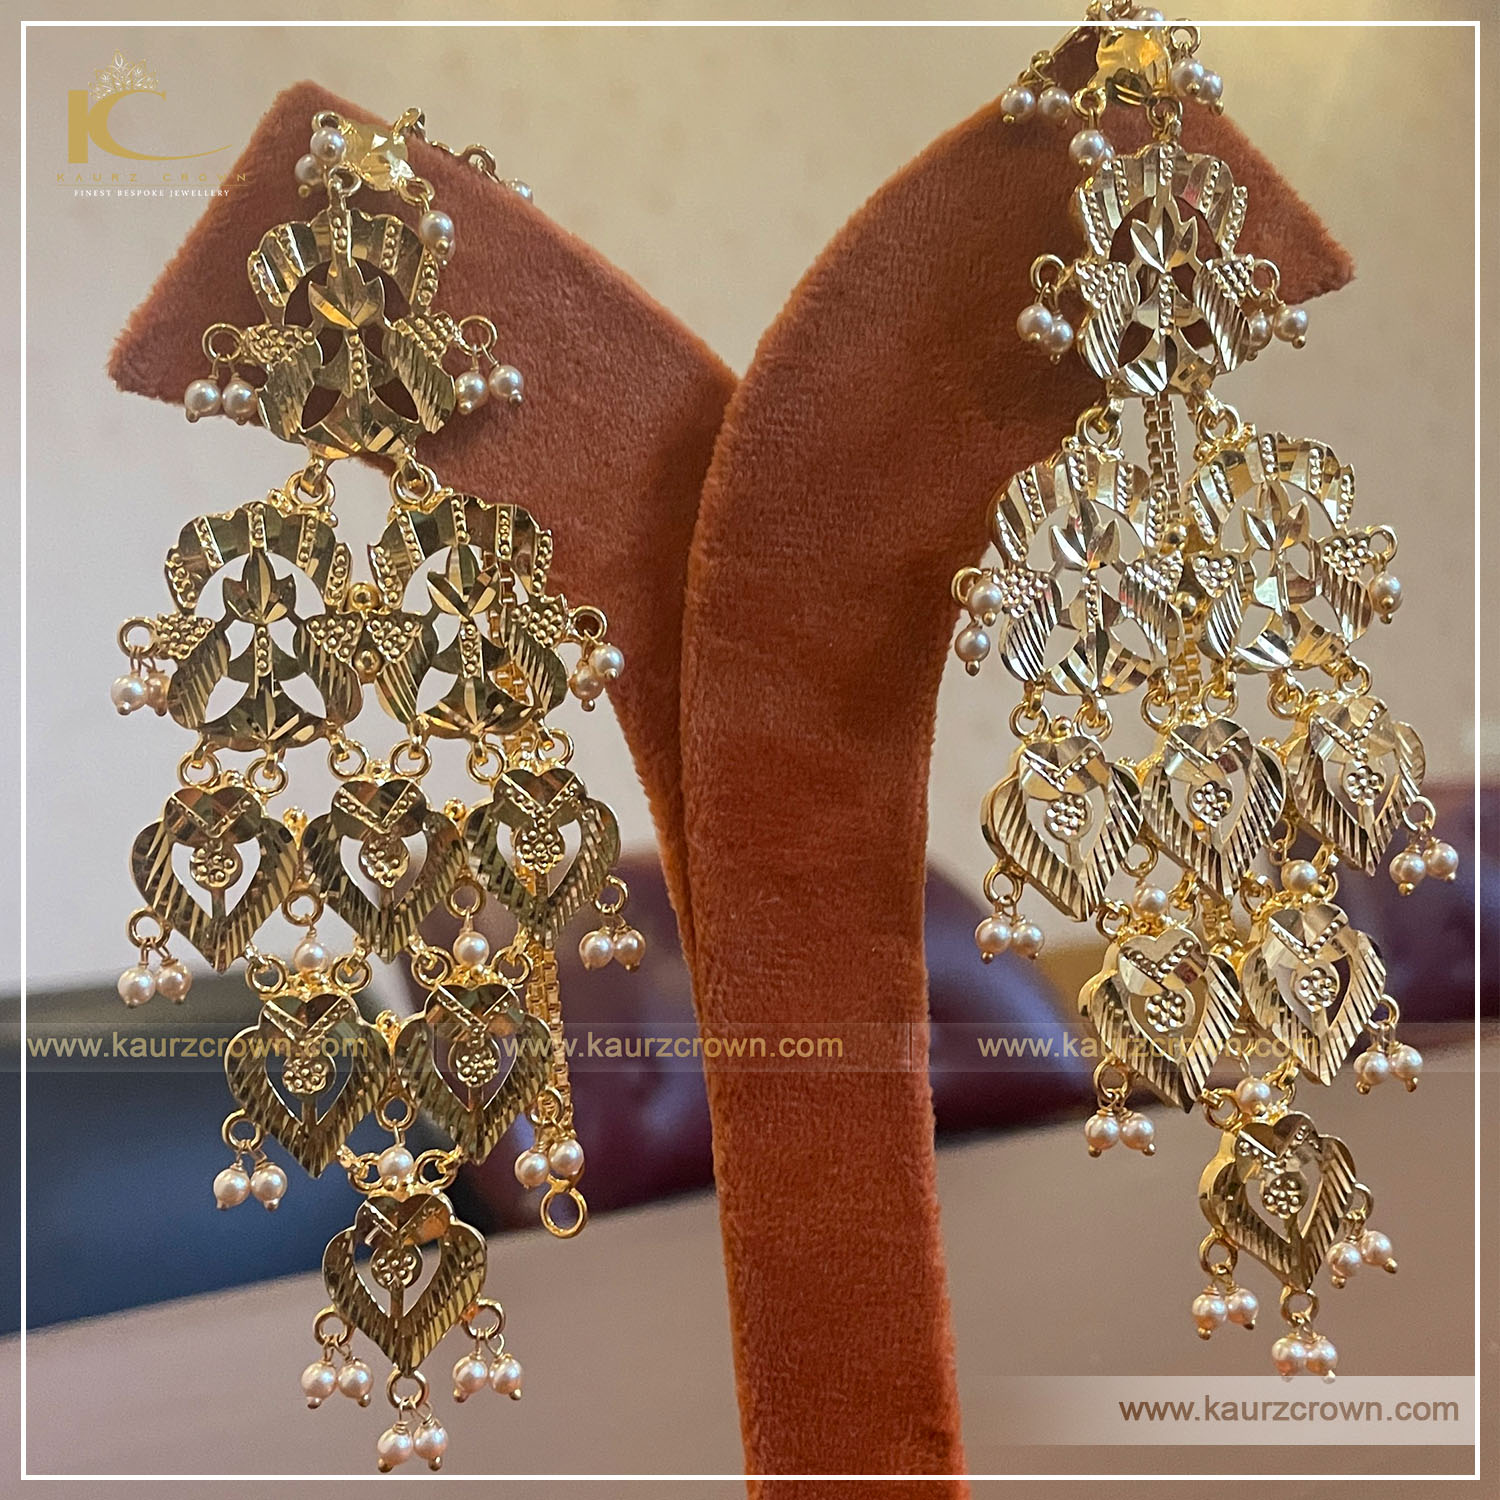 Awesome Kundan Big Jhumka Style Earrings Jewelry Set, Pearls Guttapusalu  Style Earrings Set, South Indian Earrings, Punjabi Earrings. - Etsy |  Indian bridal jewelry sets, Indian earrings, Jewelry earrings